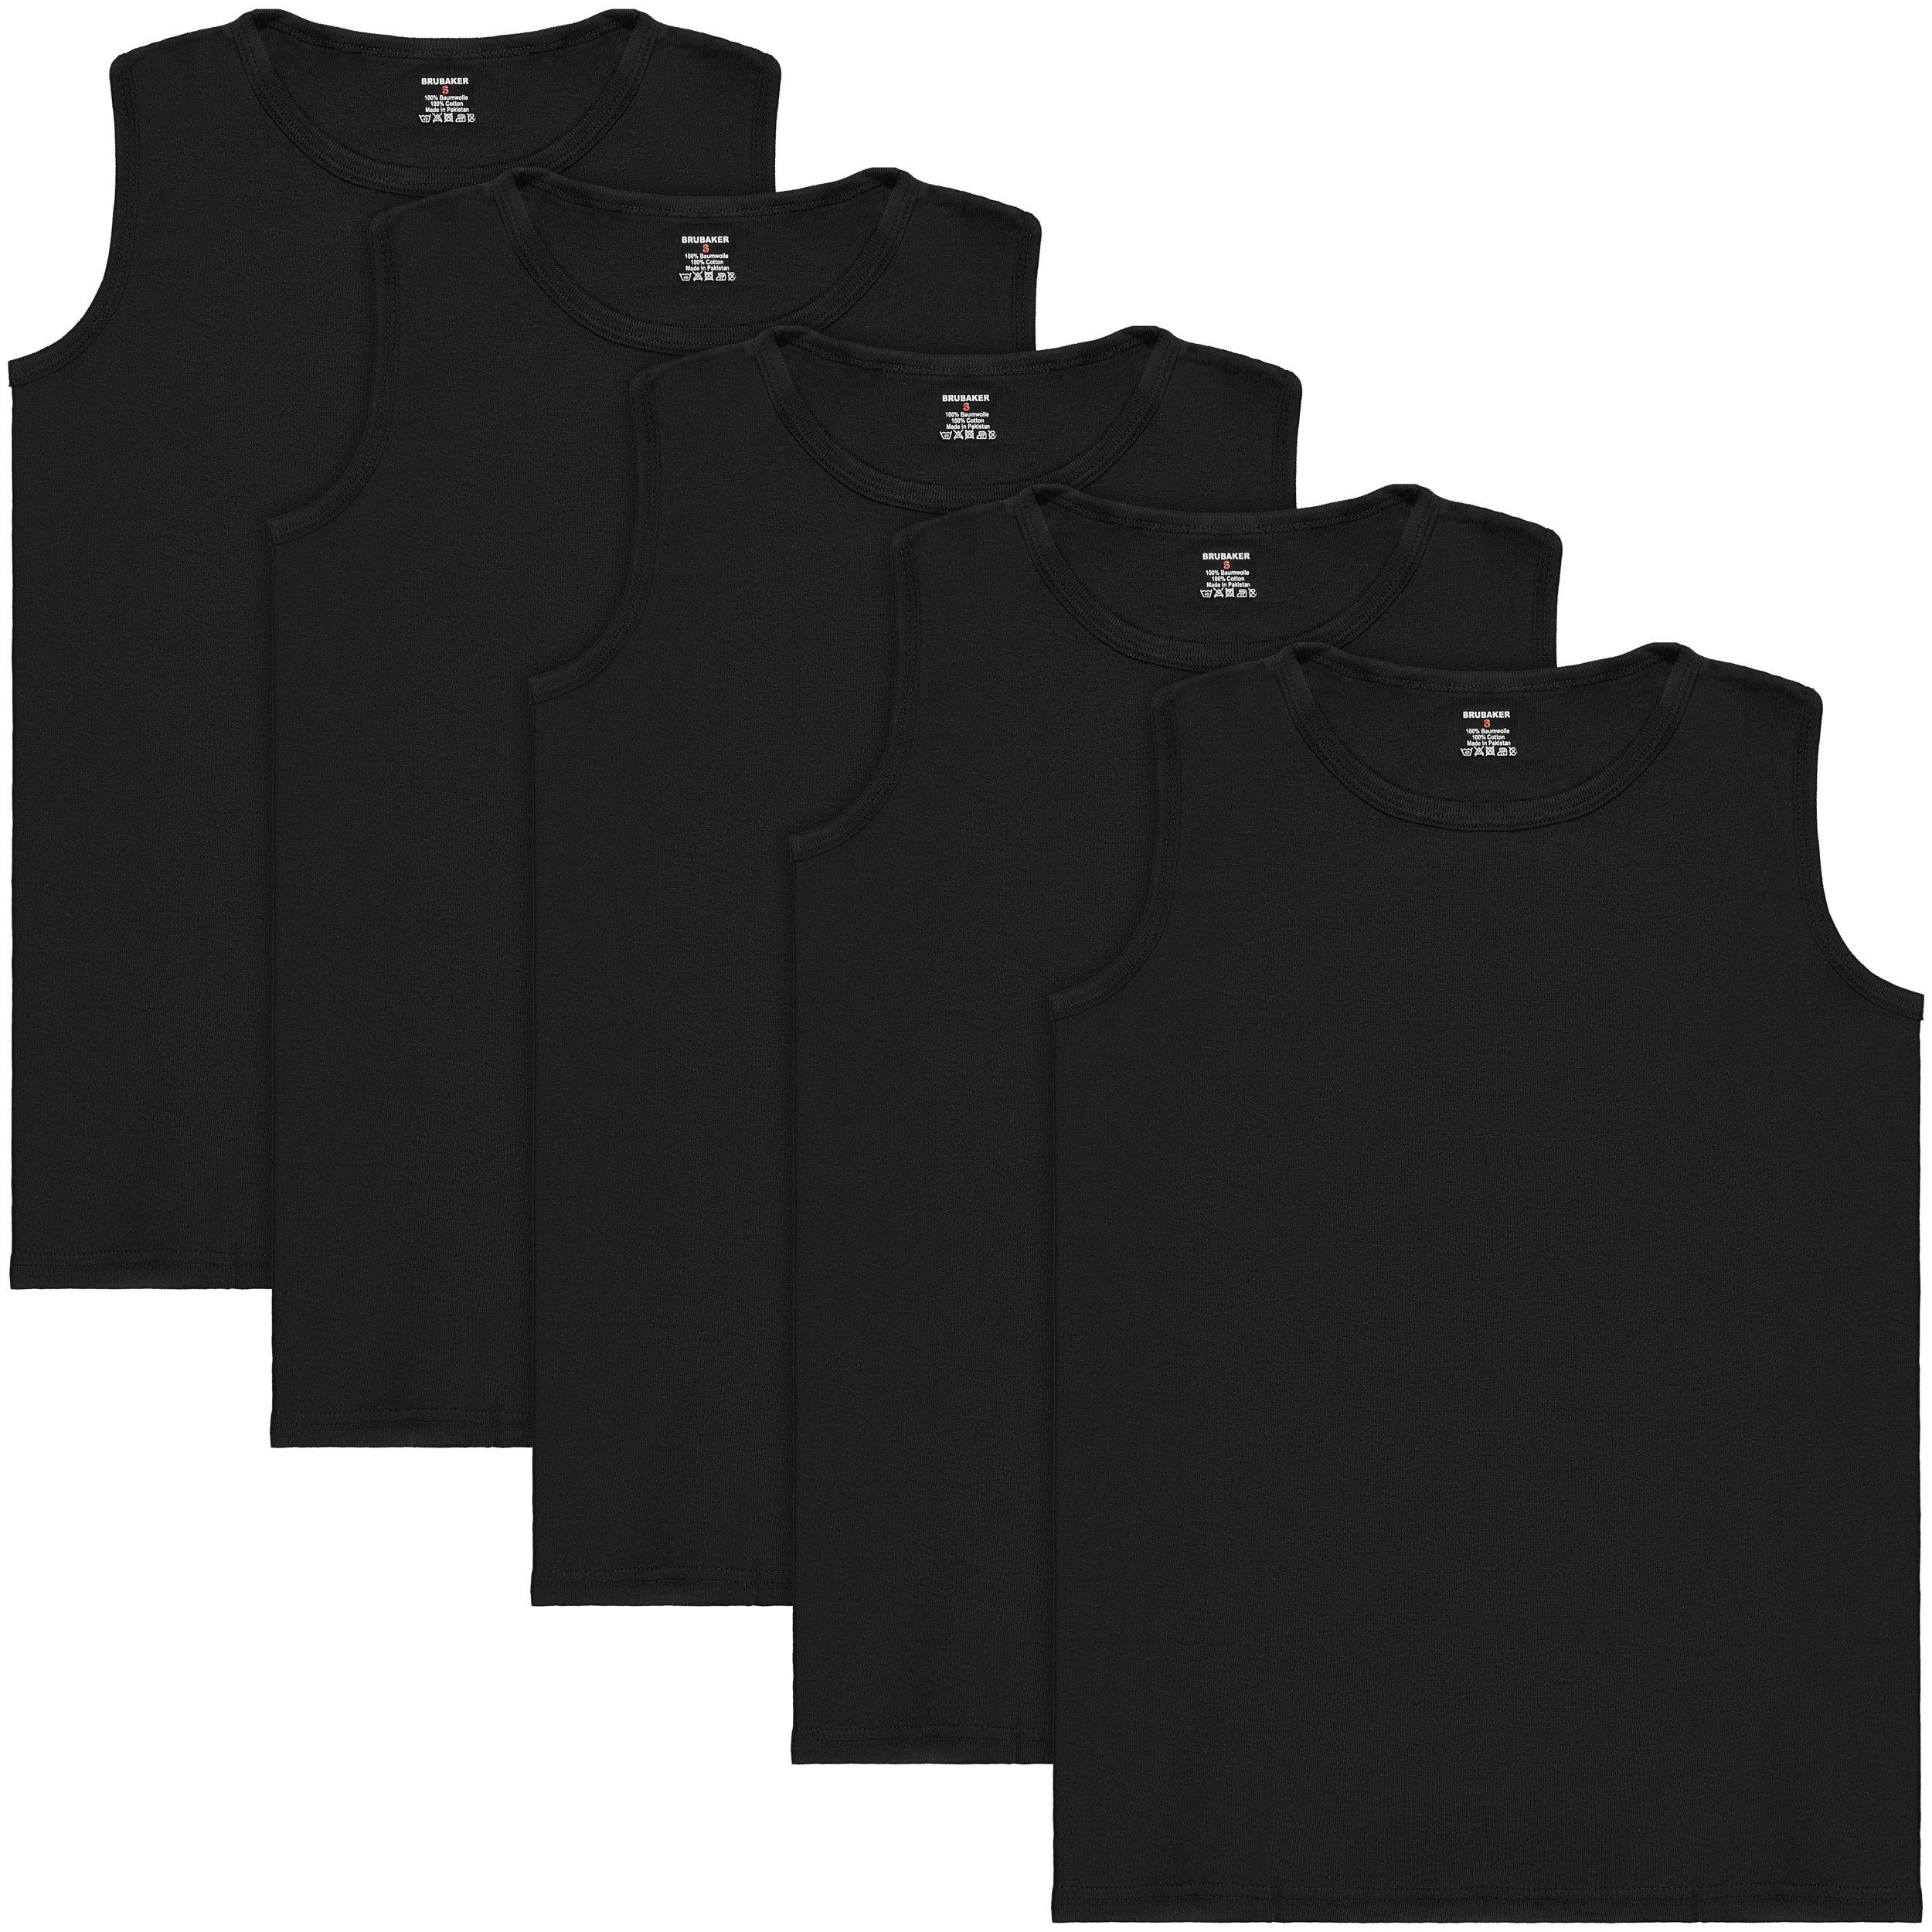 BRUBAKER Muskelshirt Tank Top Unterhemd mit Rundhals Ausschnitt (5er-Pack) Herren Tanktop aus hochwertiger Baumwolle (glatt), Extra Lang für Männer, Schlichtes Basic Achselshirt Schwarz